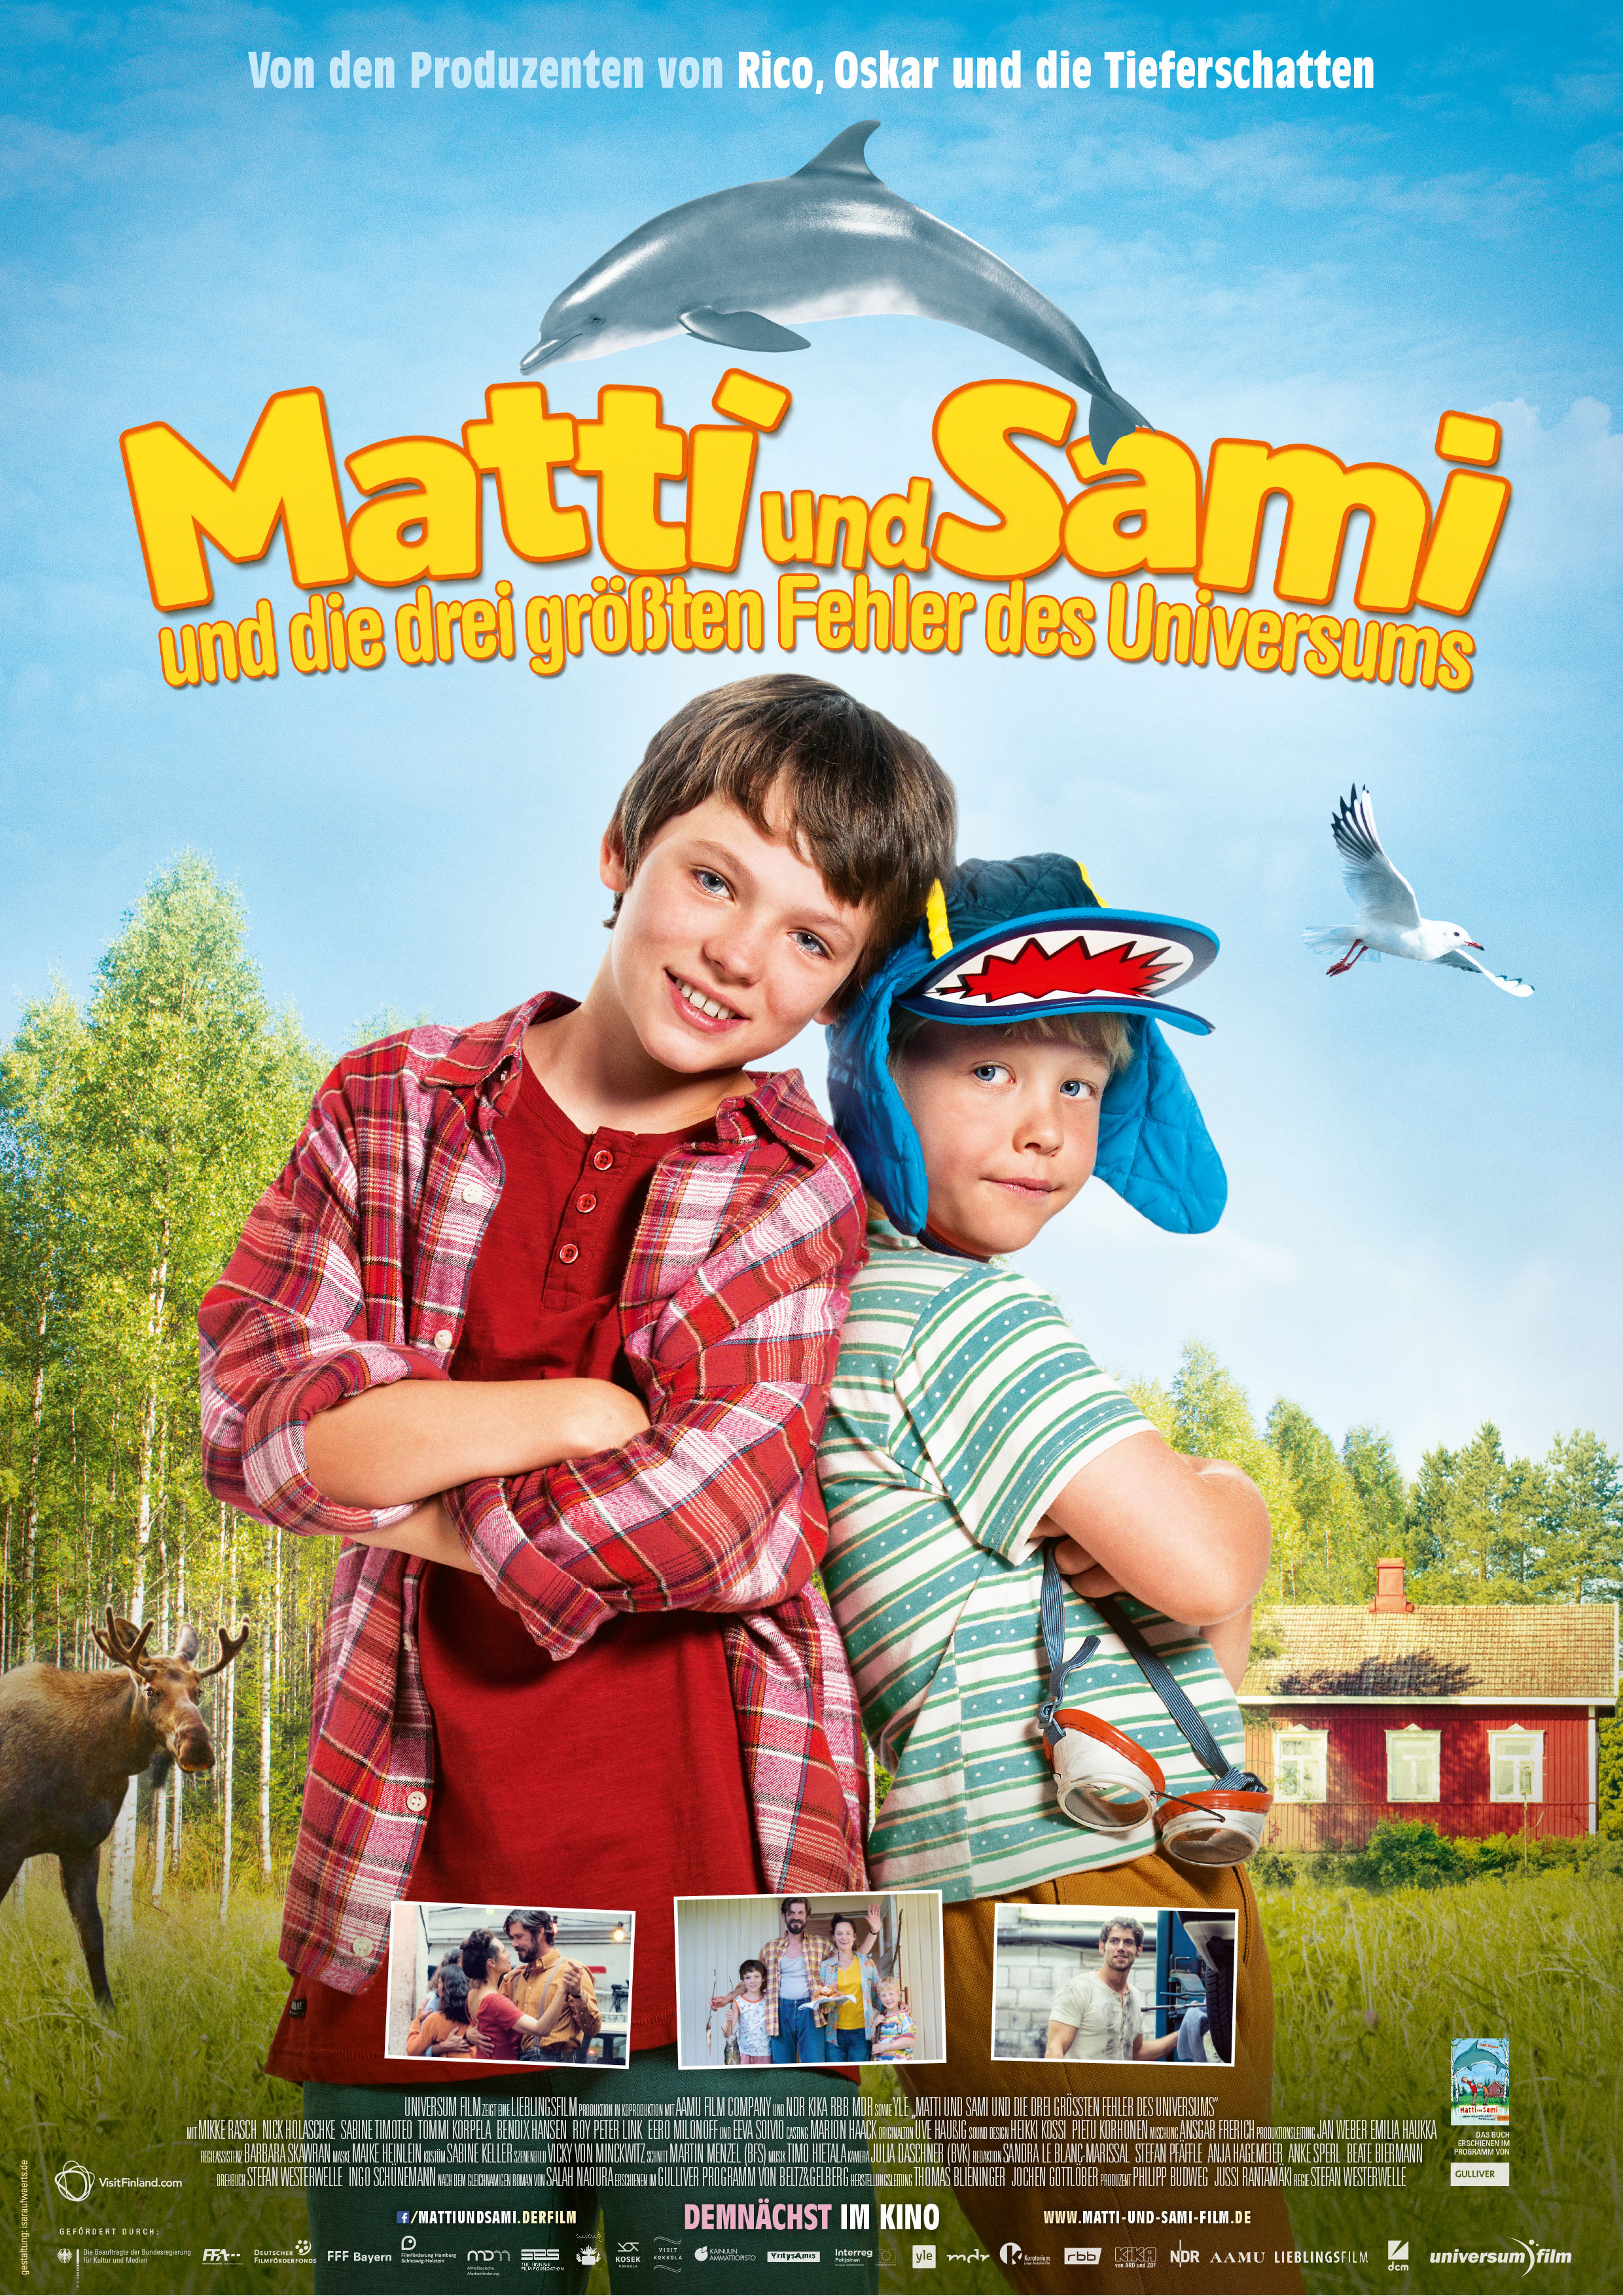 Matti und Sami und die 3 größten Fehler des Universums (2018) with English Subtitles on DVD on DVD